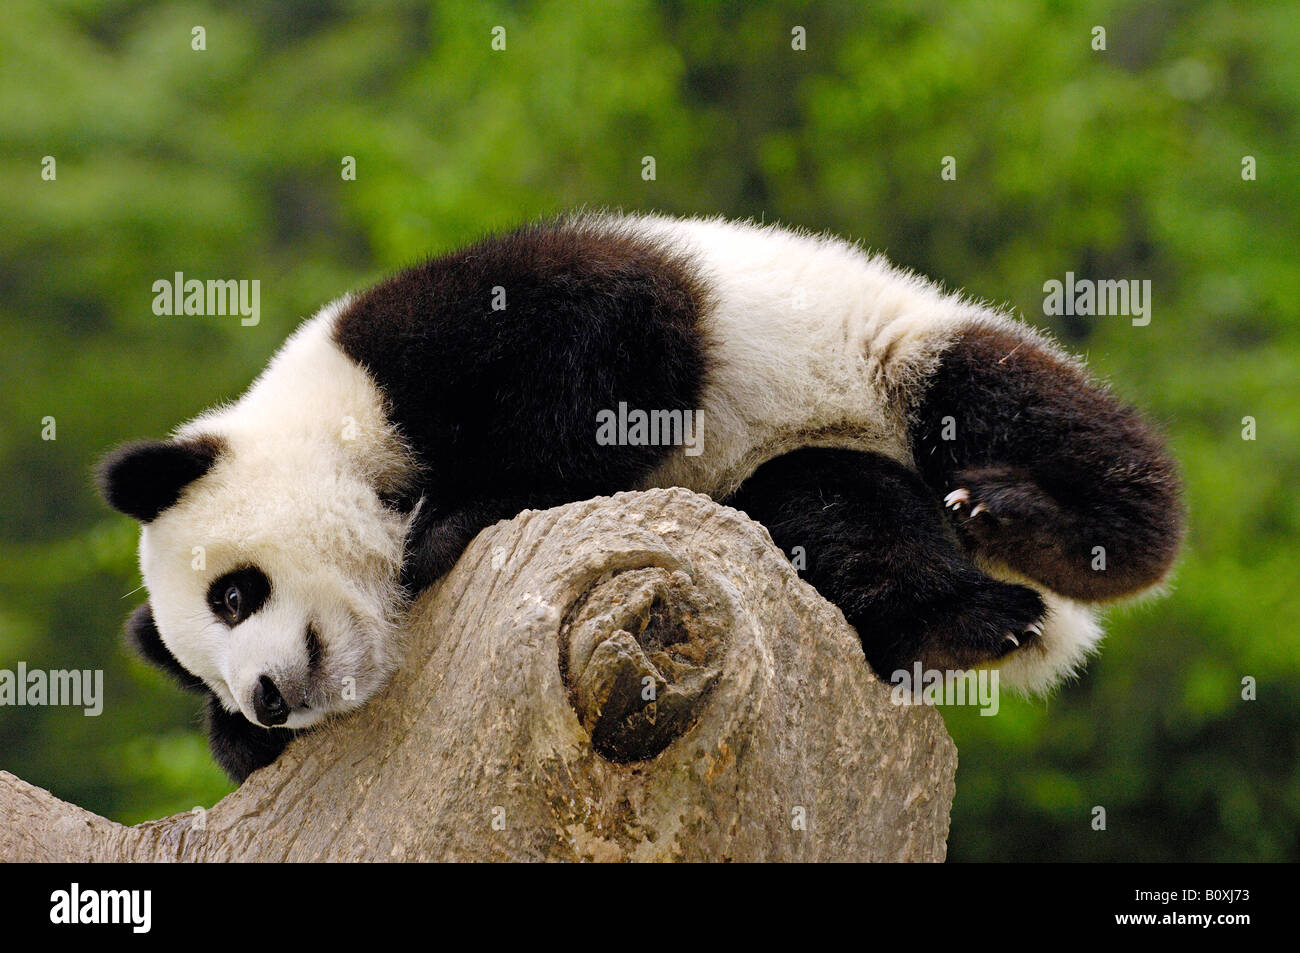 Panda géant (Ailuropoda melanoleuca). Jeune individu couché sur une souche d'arbre avec la forêt en arrière-plan Banque D'Images